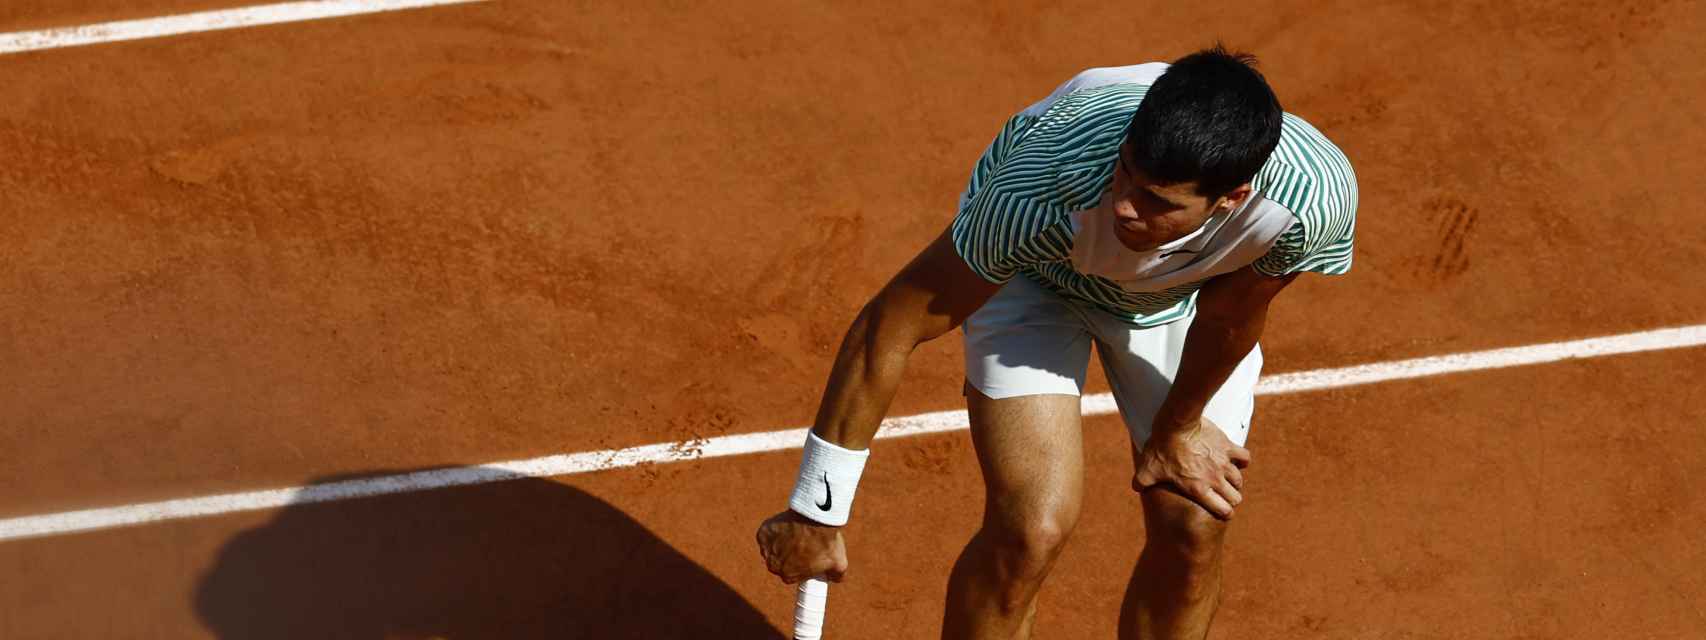 Carlos Alcaraz en el momento en el que se lesiona en su partido contra Djokovic en Roland Garros.